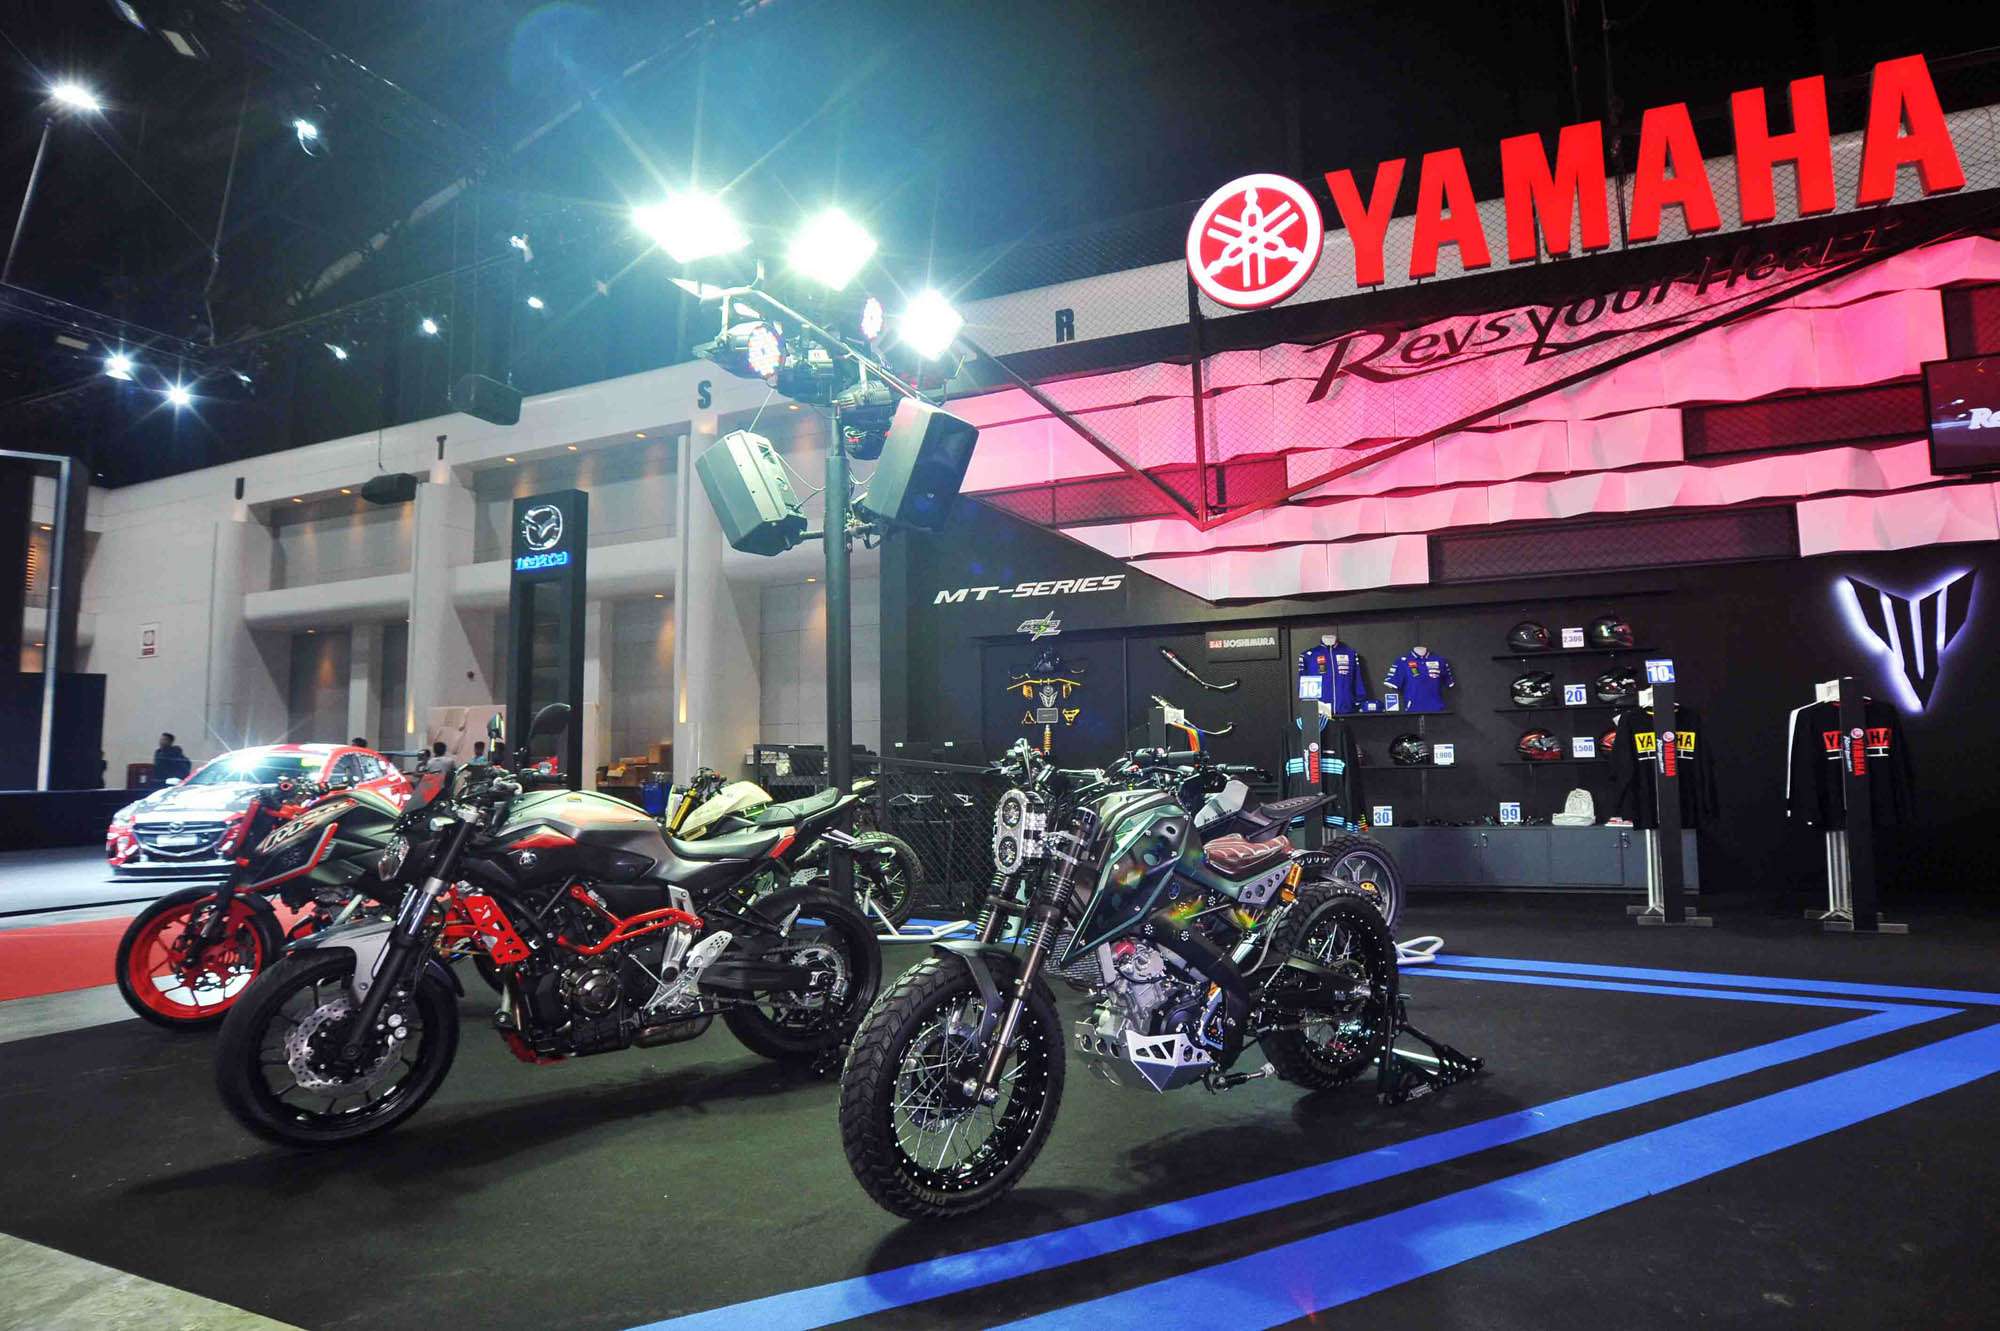 ยามาฮ่าเปิดบูธ Yamaha Rev Salon